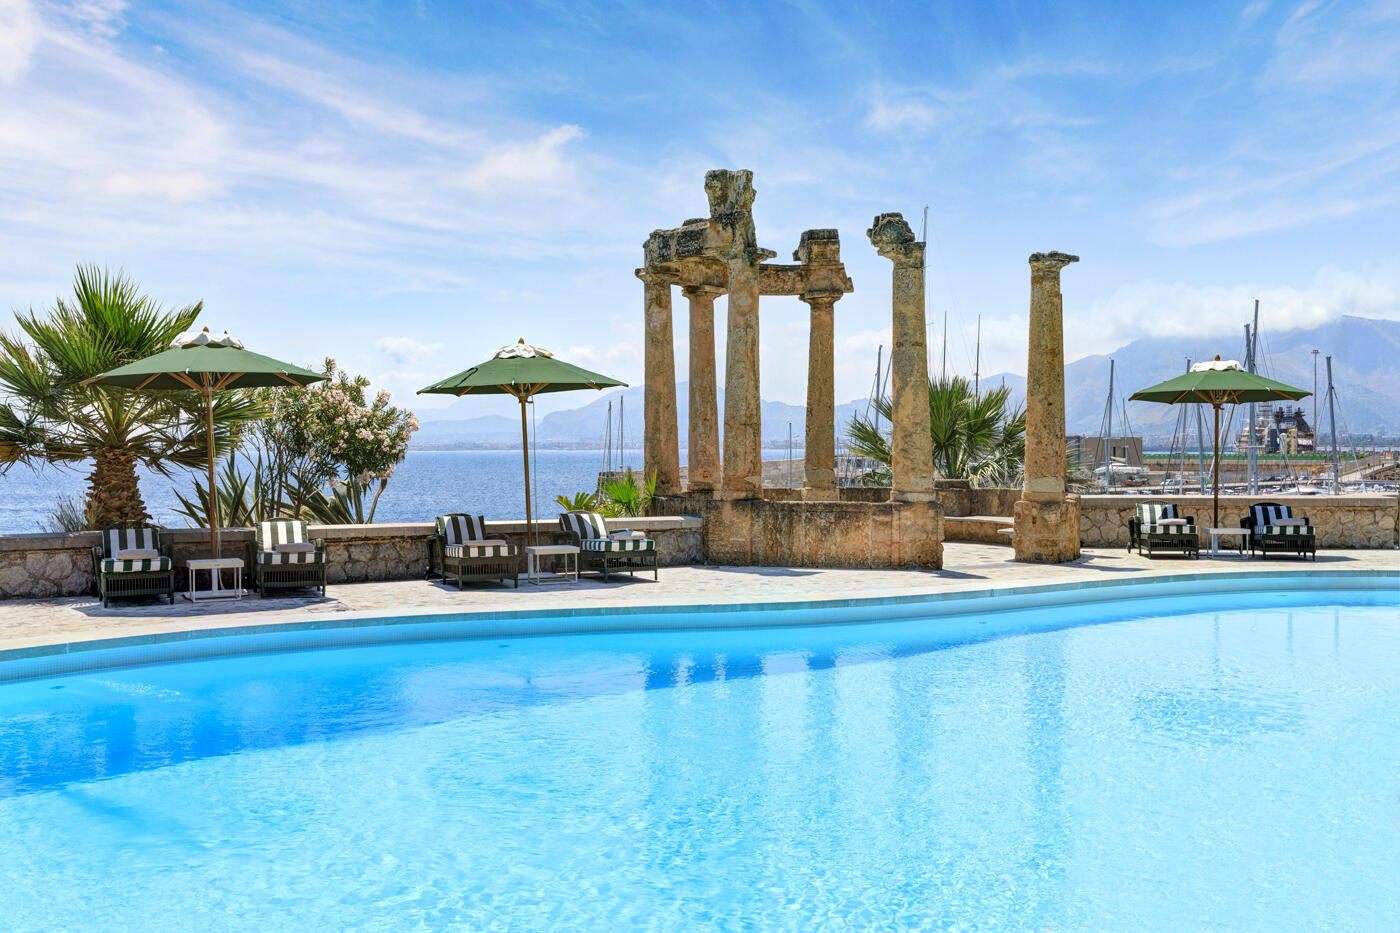 Pool mit Liegestühlen und Sonnenschirmen und römischen Säulen. Im Hintergrund ist der Golf von Palermo